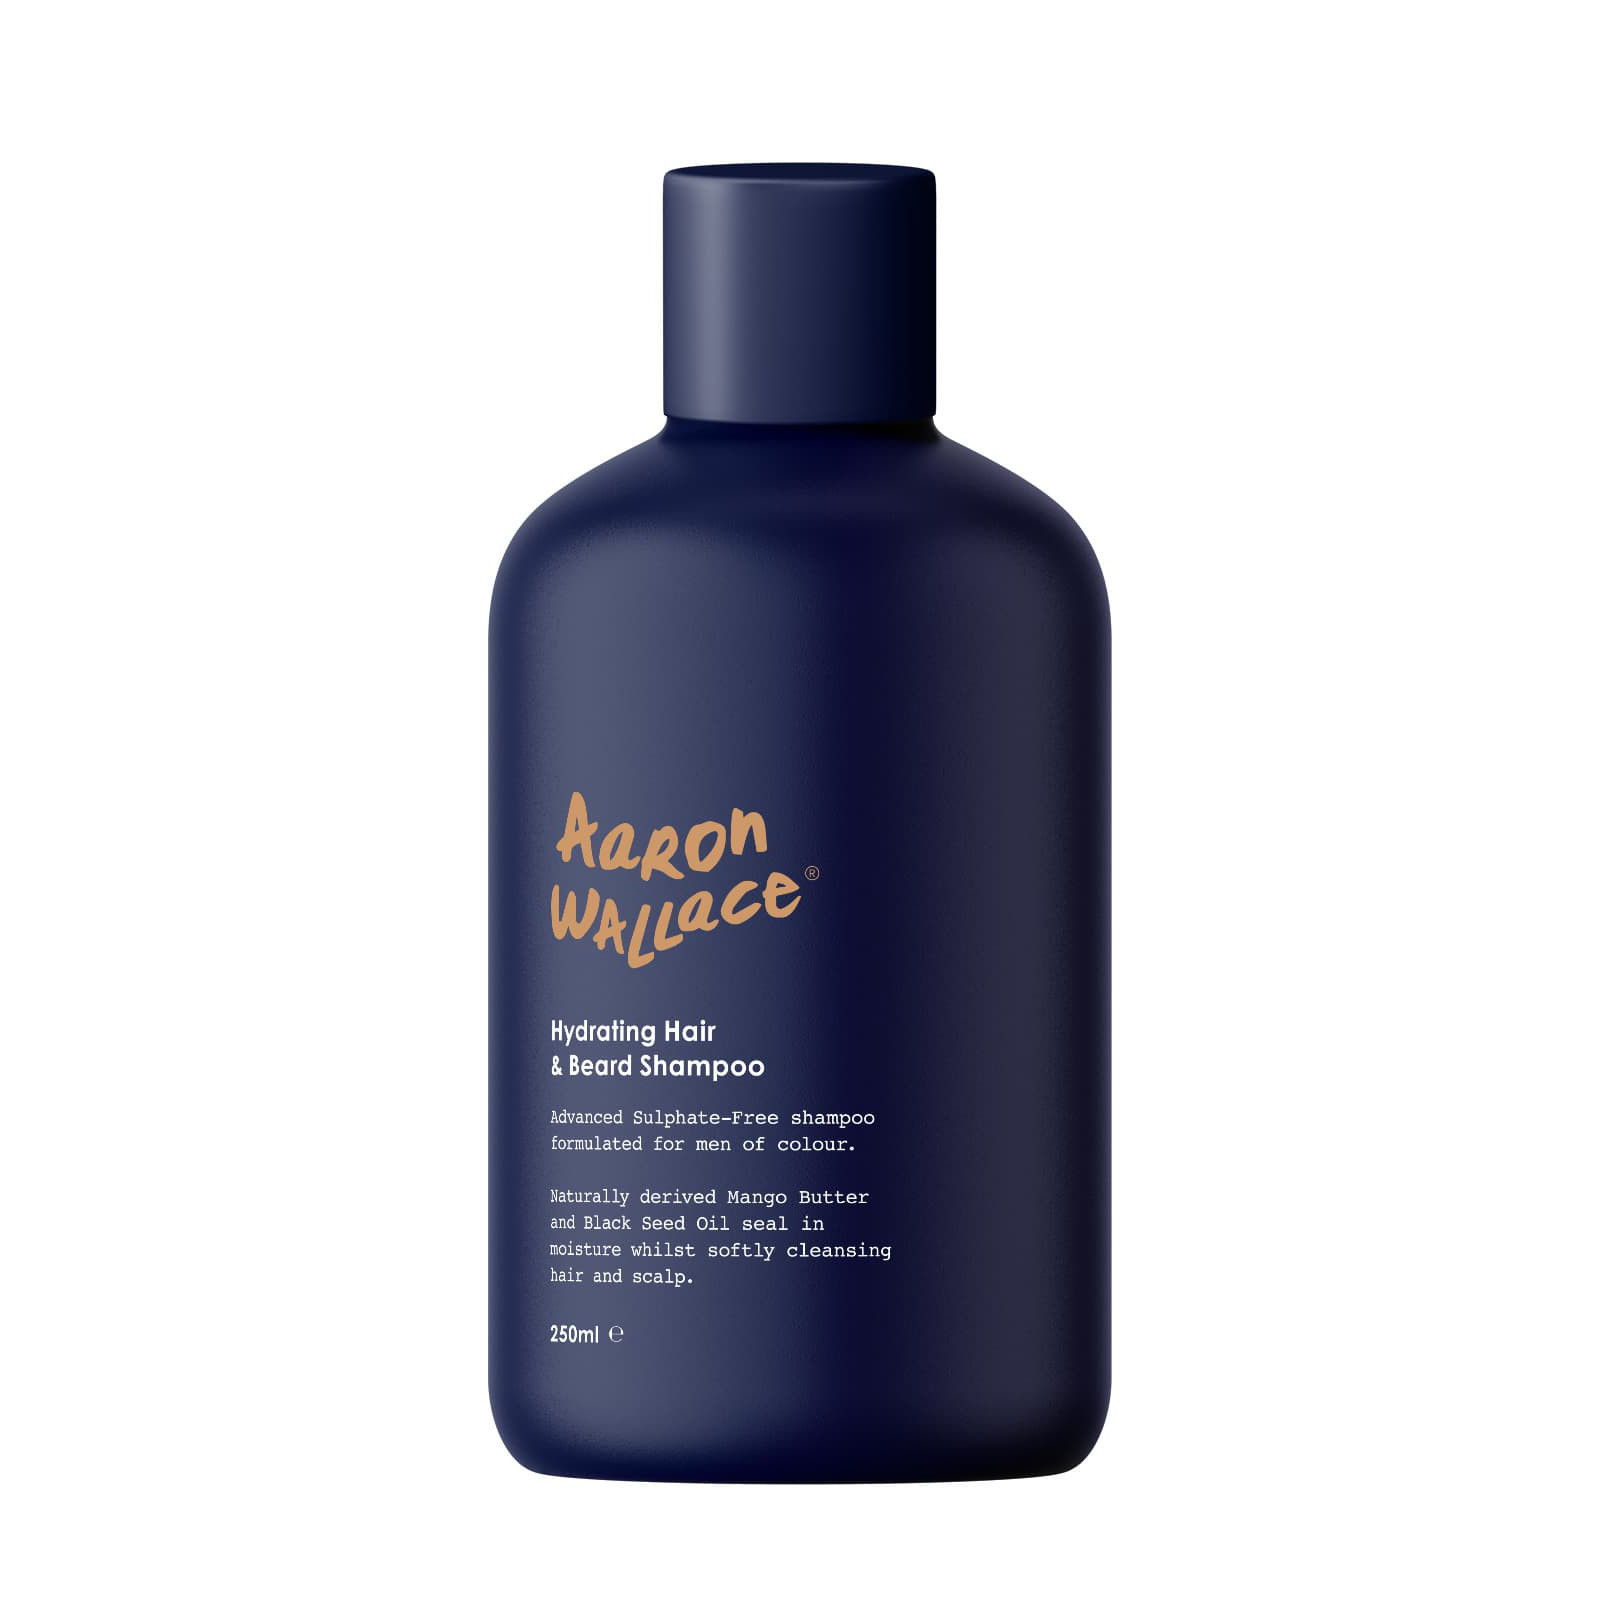 Aaron Wallace Hydrating Hair & Beard Shampoo